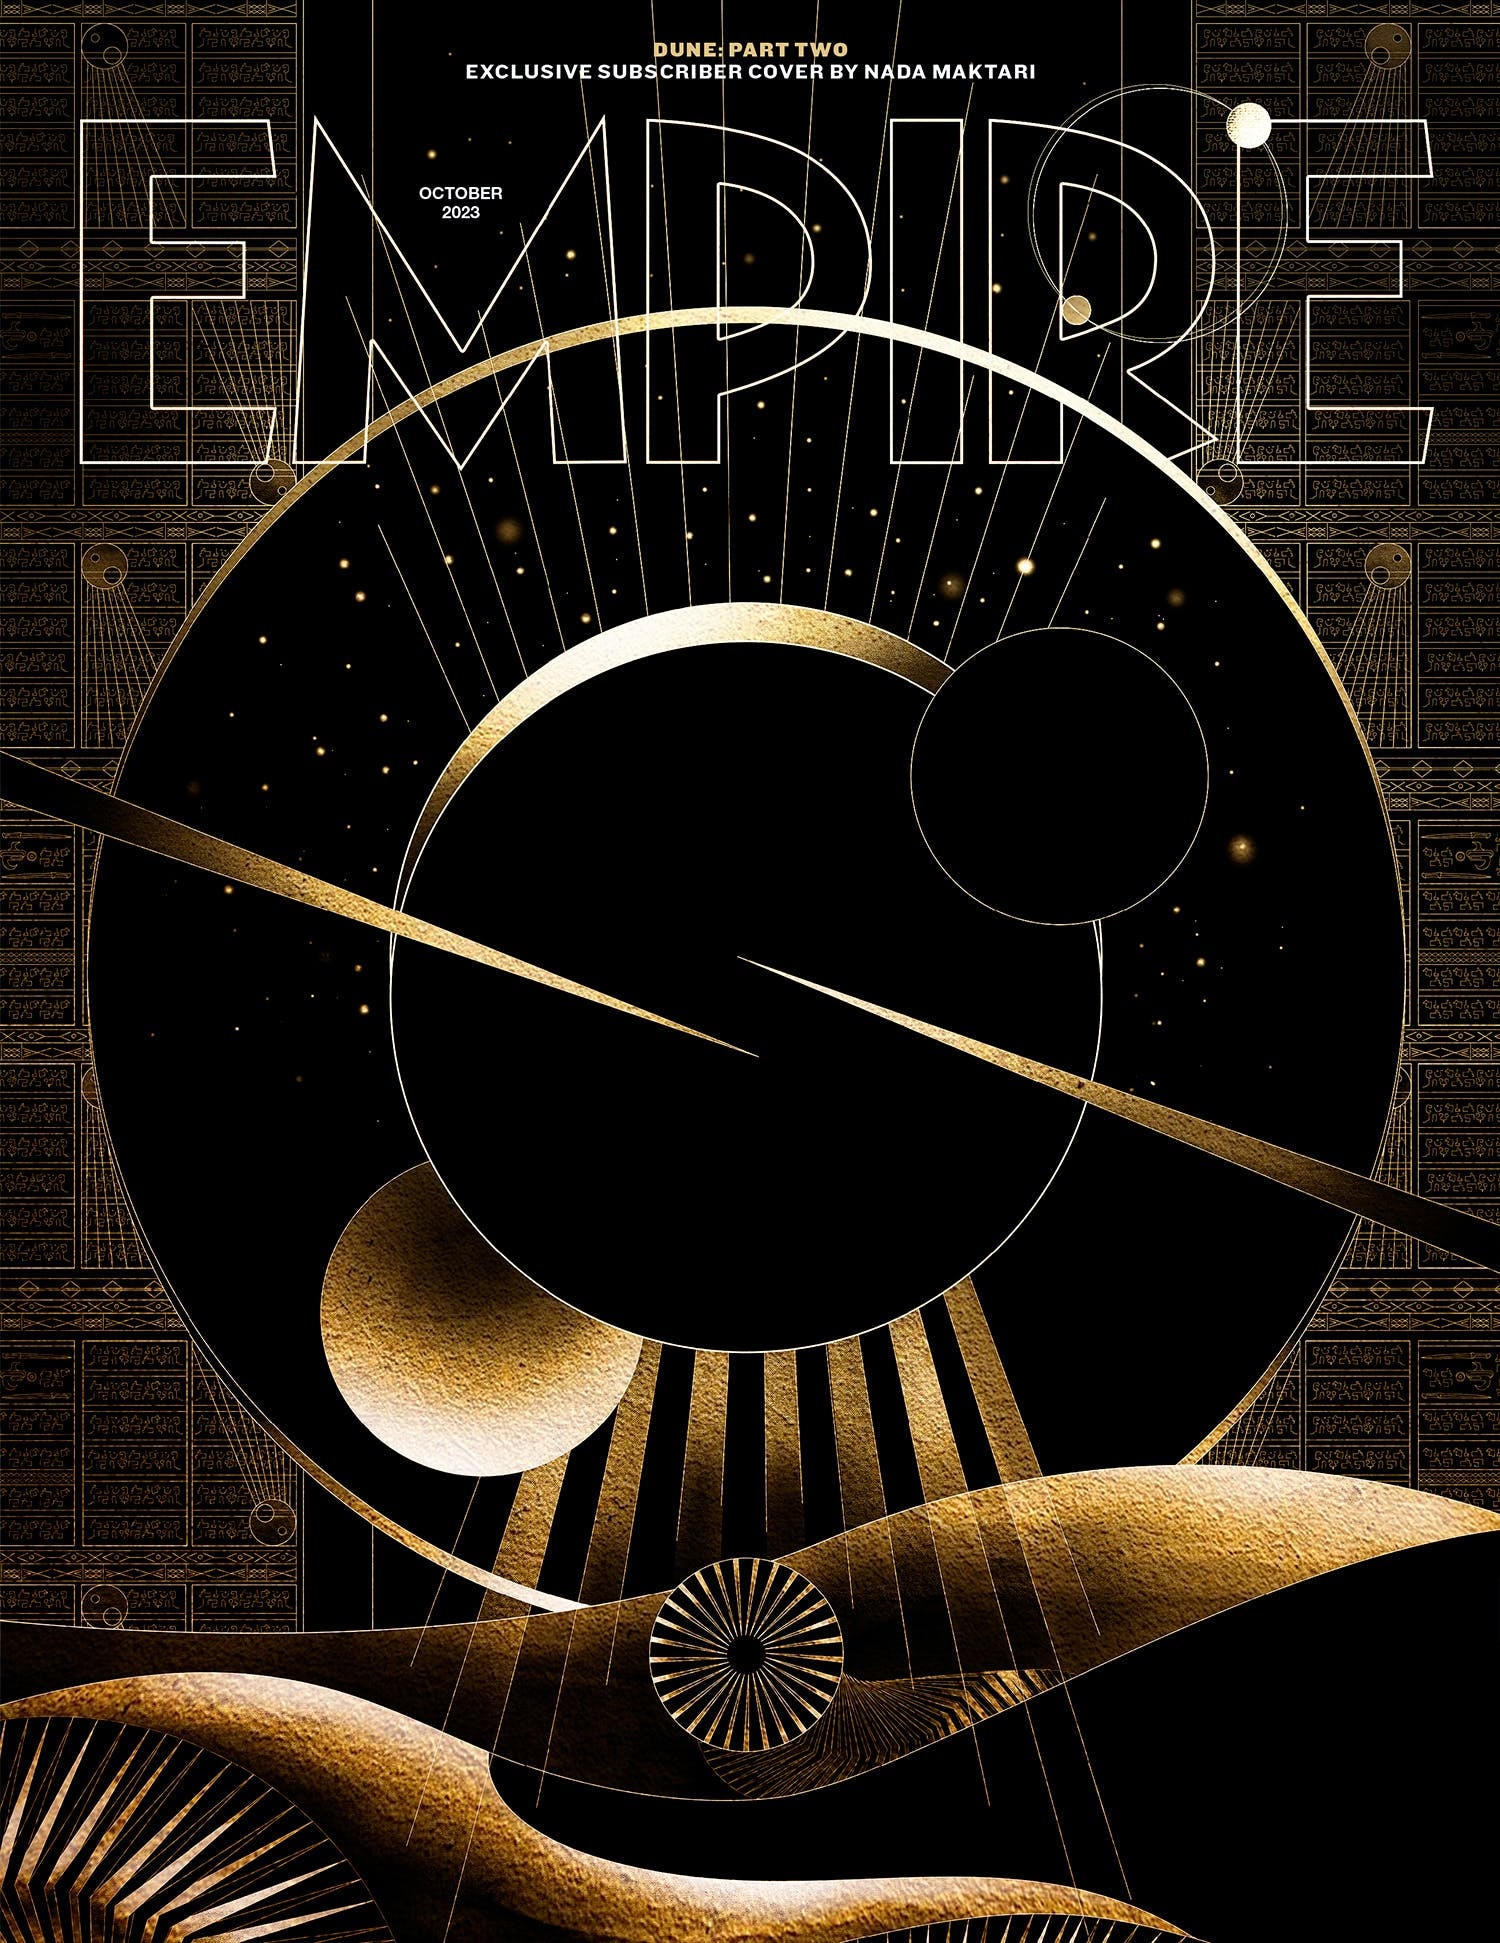 duna-parte-dois-empire-magazine-cover-subscriber.jpg